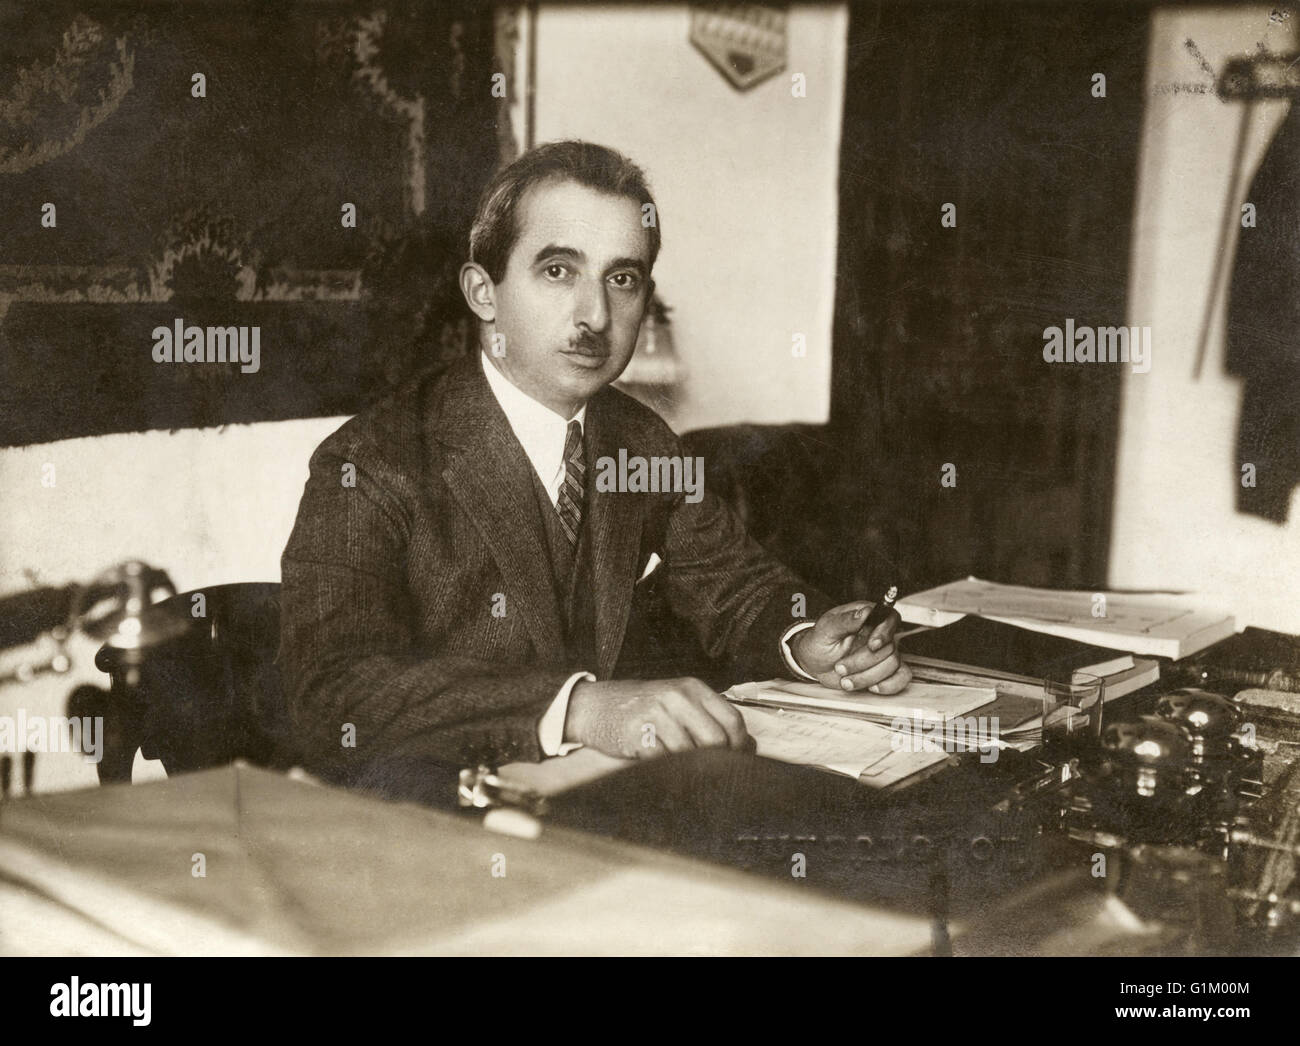 ISMET INÖNÜ (1884-1973). Noto anche come Ismet Pasha. Uomo politico turco, Presidente della Turchia, 1938-1950. Fotografato durante il suo incarico come Primo Ministro, 1928. Foto Stock